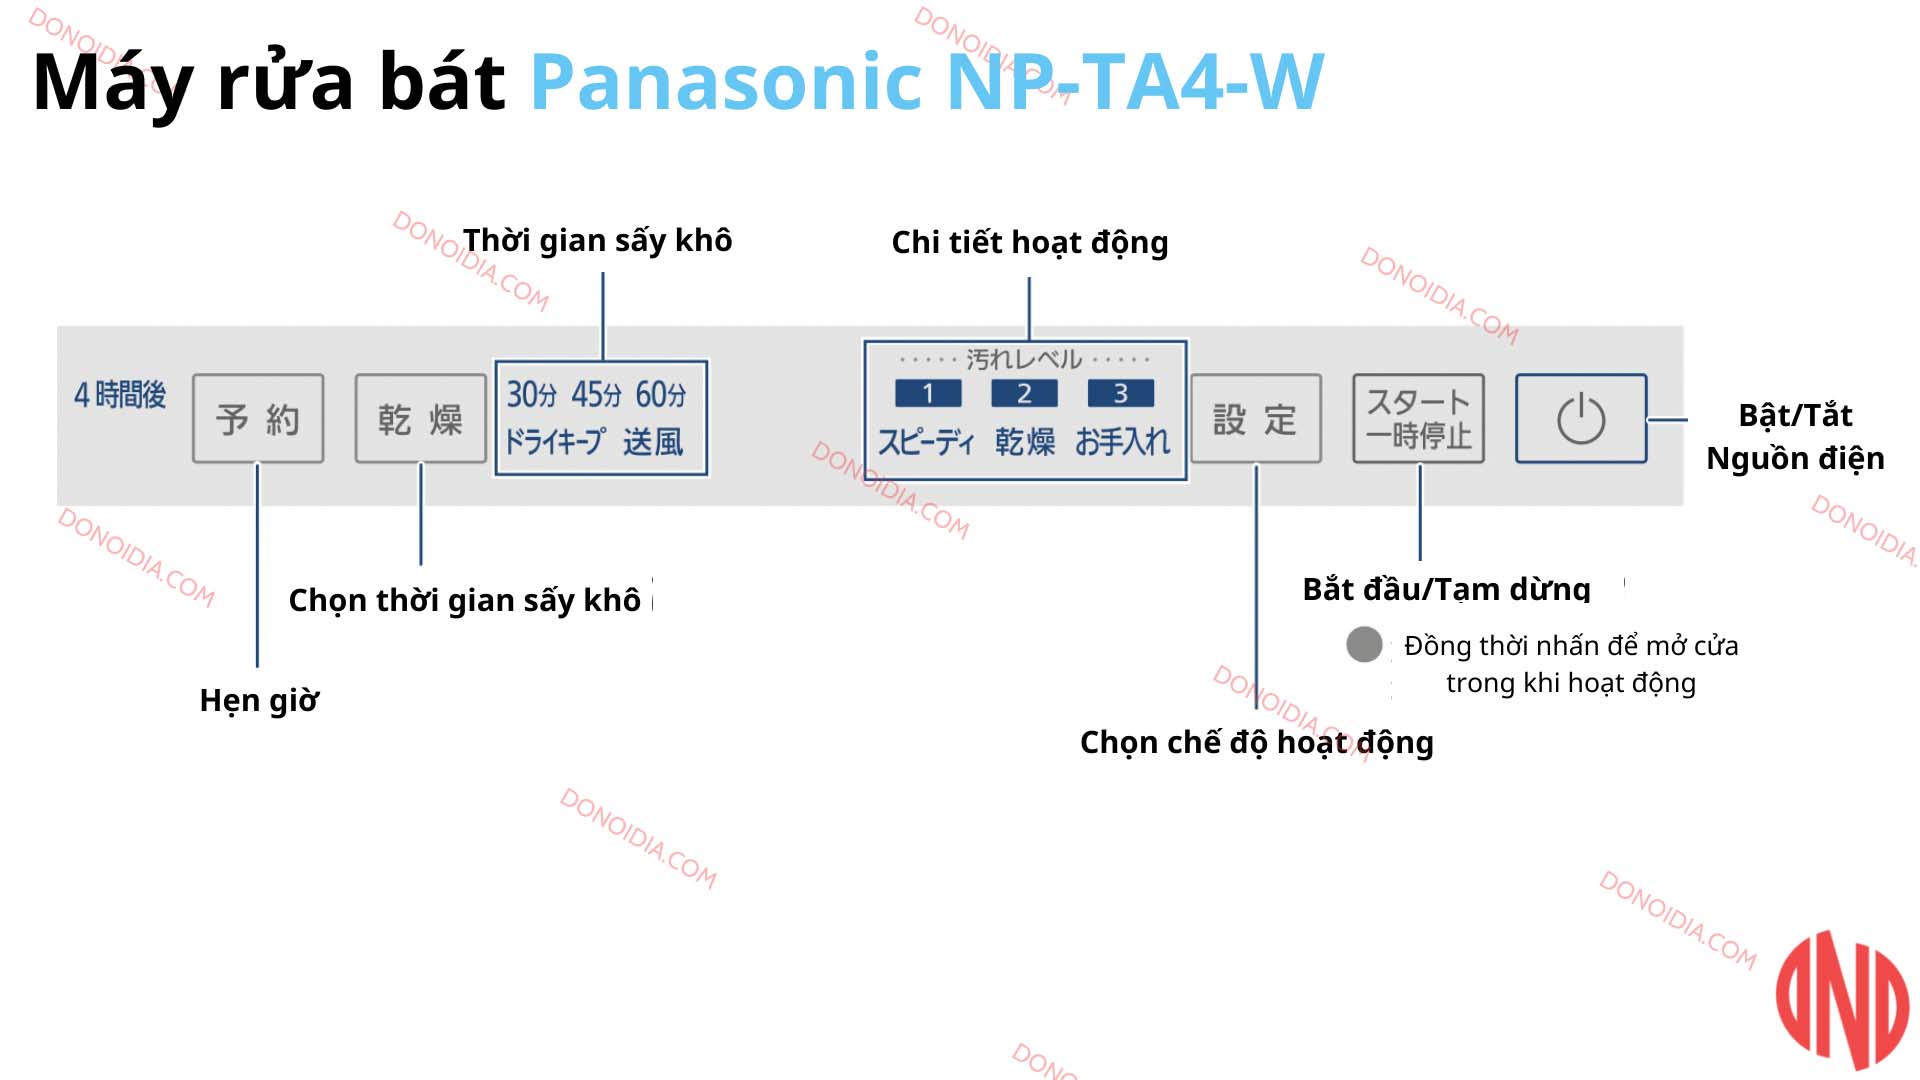 Huong-dan-su-dung-may-rua-bat-Panasonic-NP-TA4-W-1